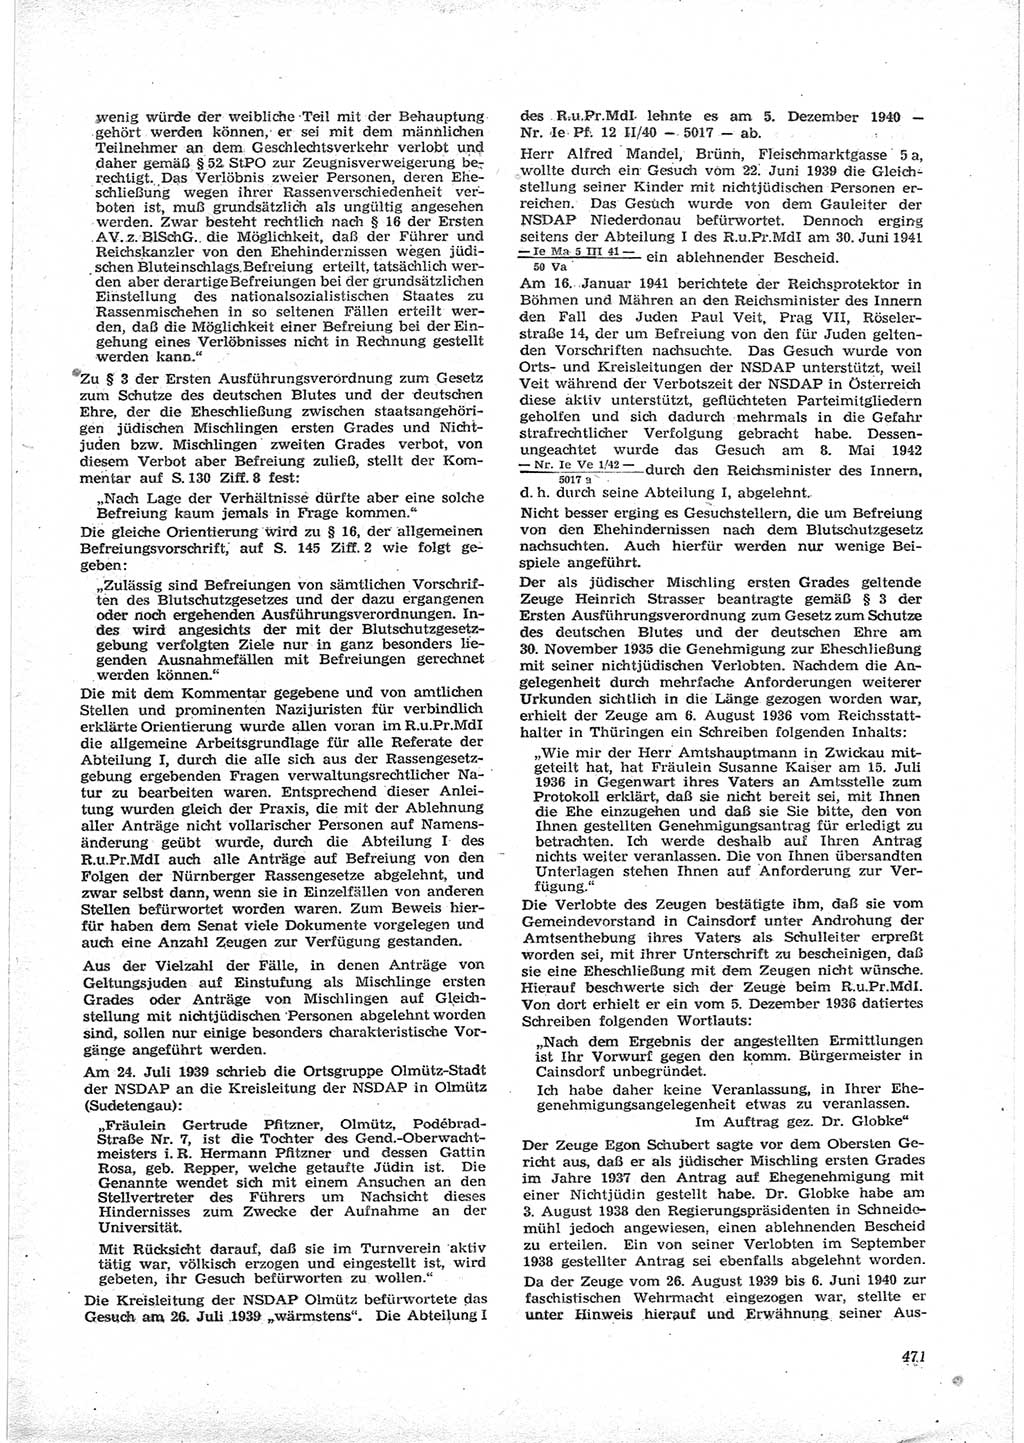 Neue Justiz (NJ), Zeitschrift für Recht und Rechtswissenschaft [Deutsche Demokratische Republik (DDR)], 17. Jahrgang 1963, Seite 471 (NJ DDR 1963, S. 471)